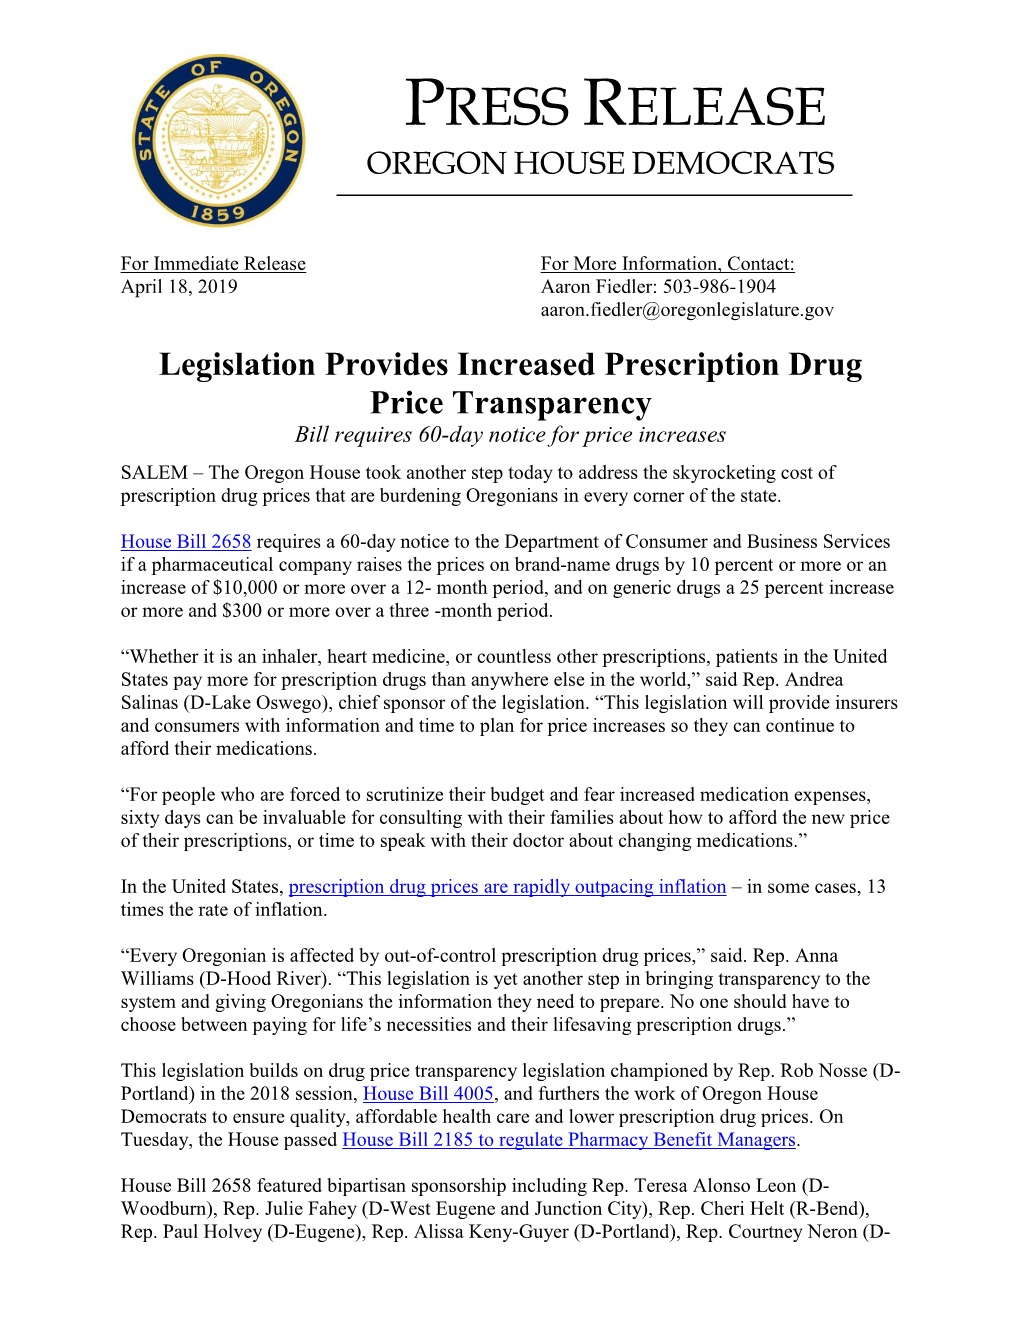 PRESS RELEASE Legislation Provides Increased Prescription